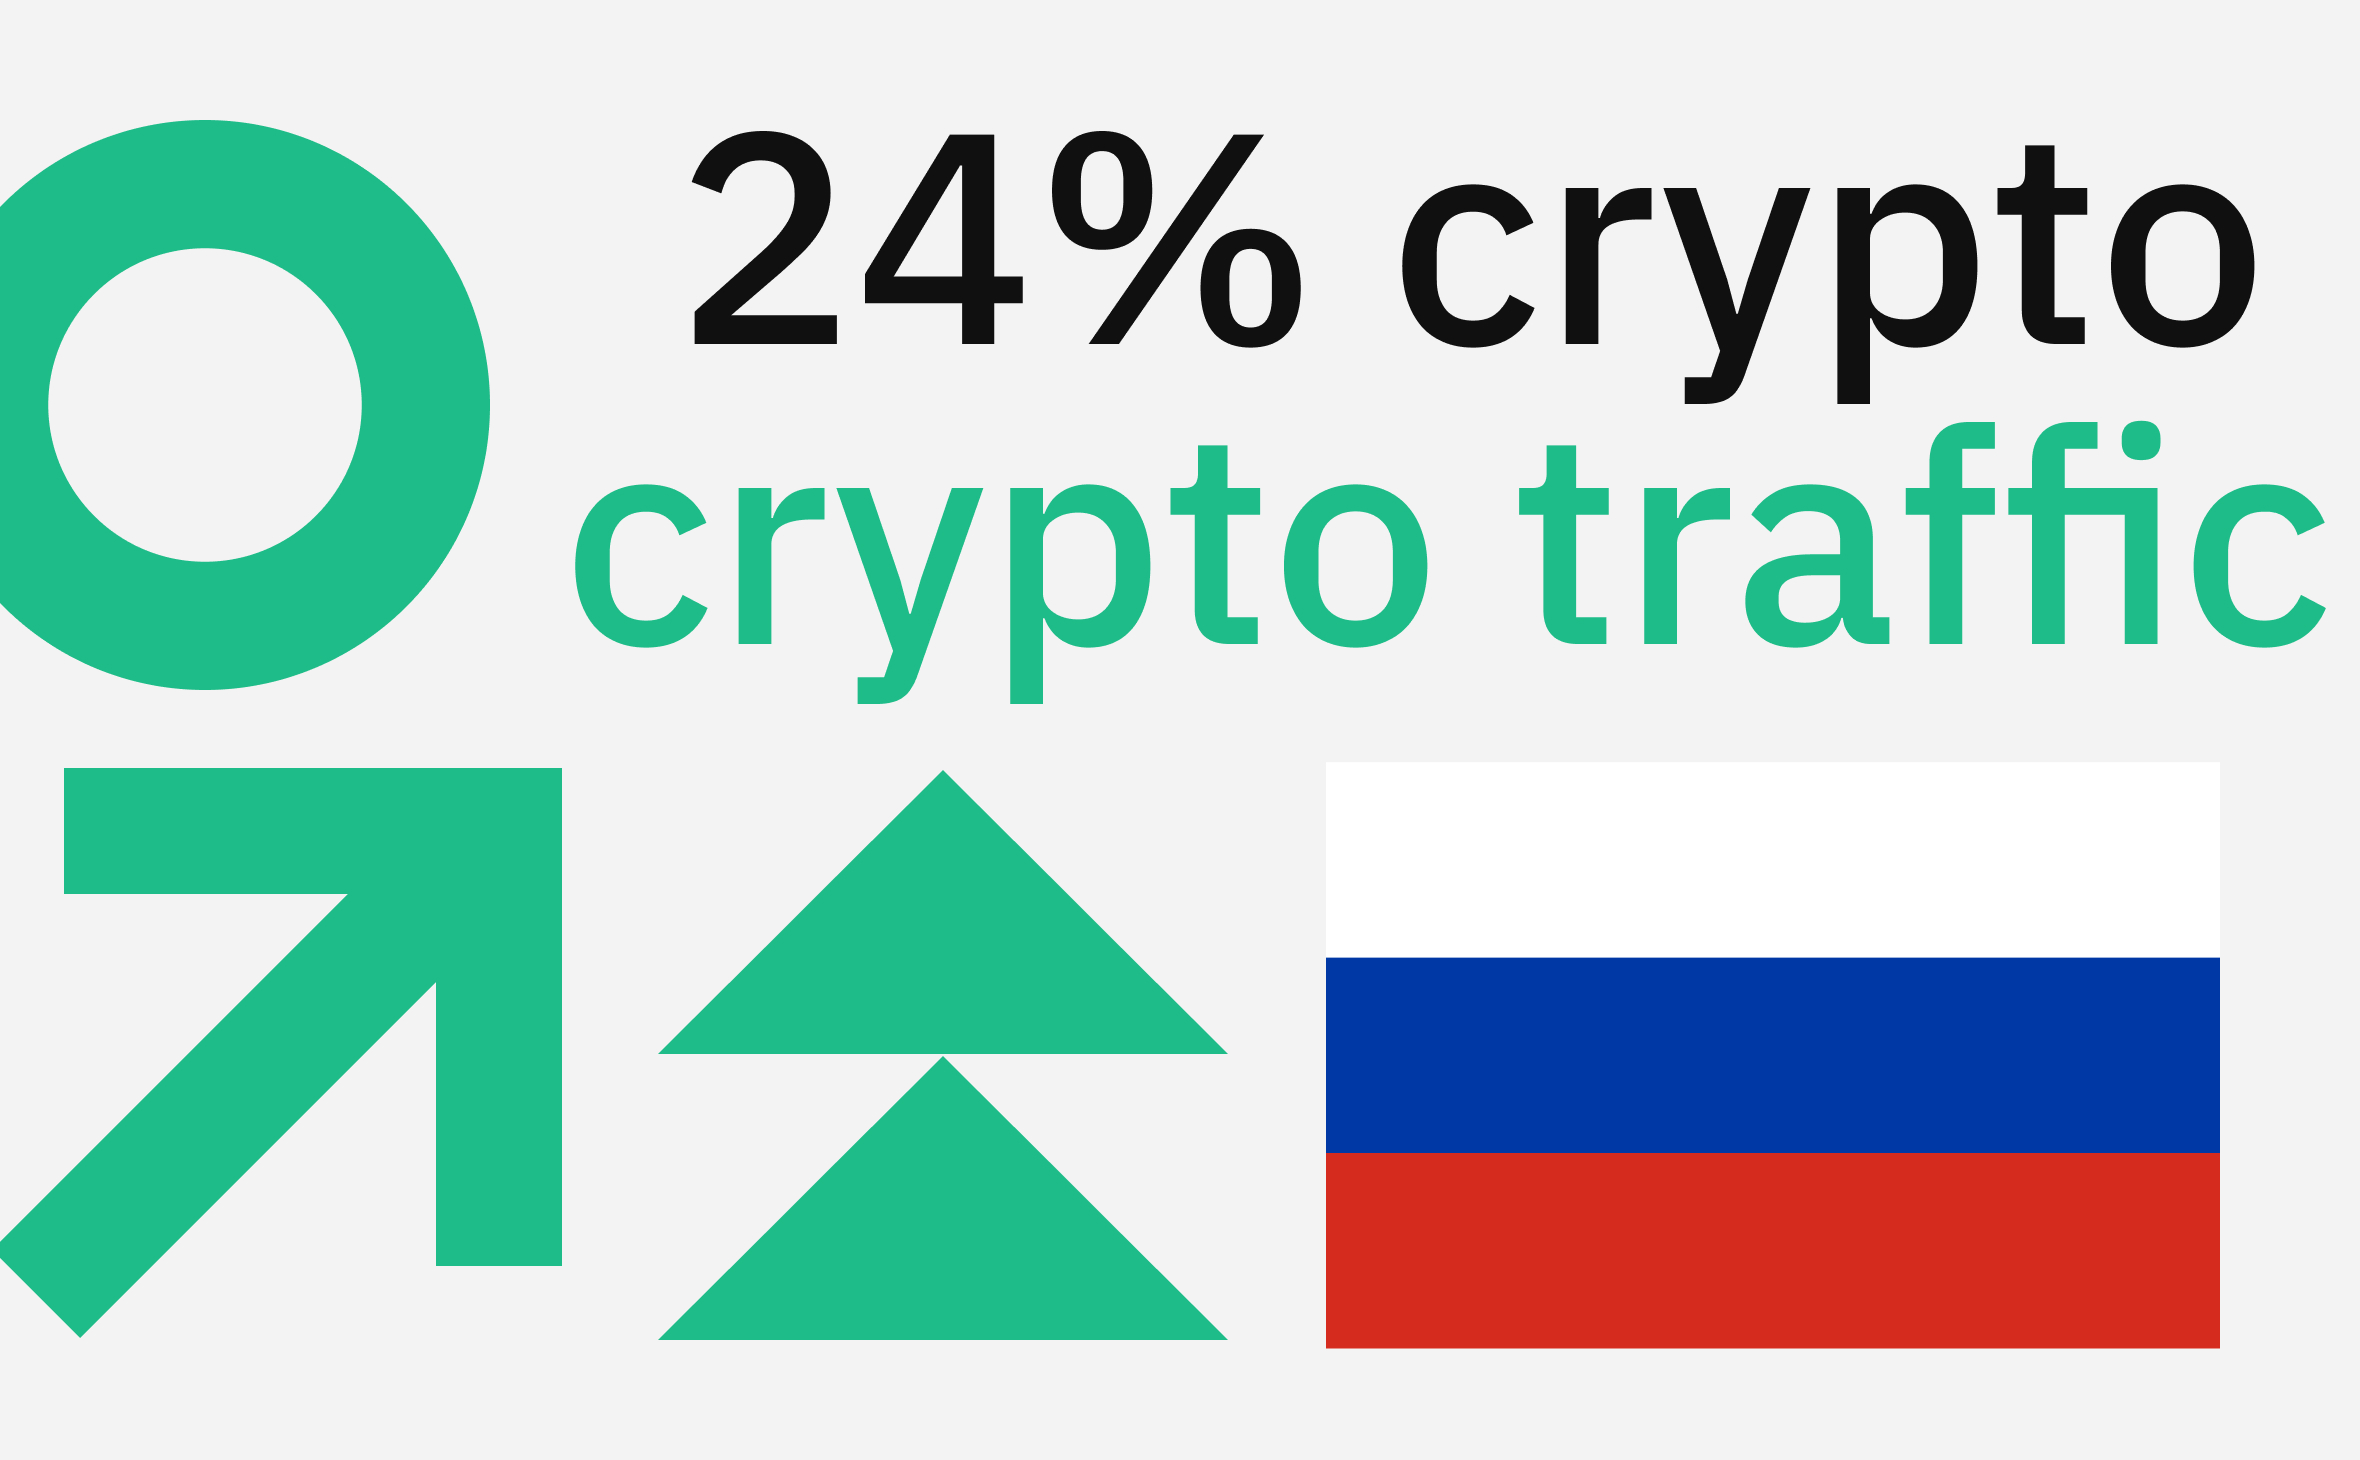 В марте на Россию пришлось до 24% трафика на крупнейших криптобиржах